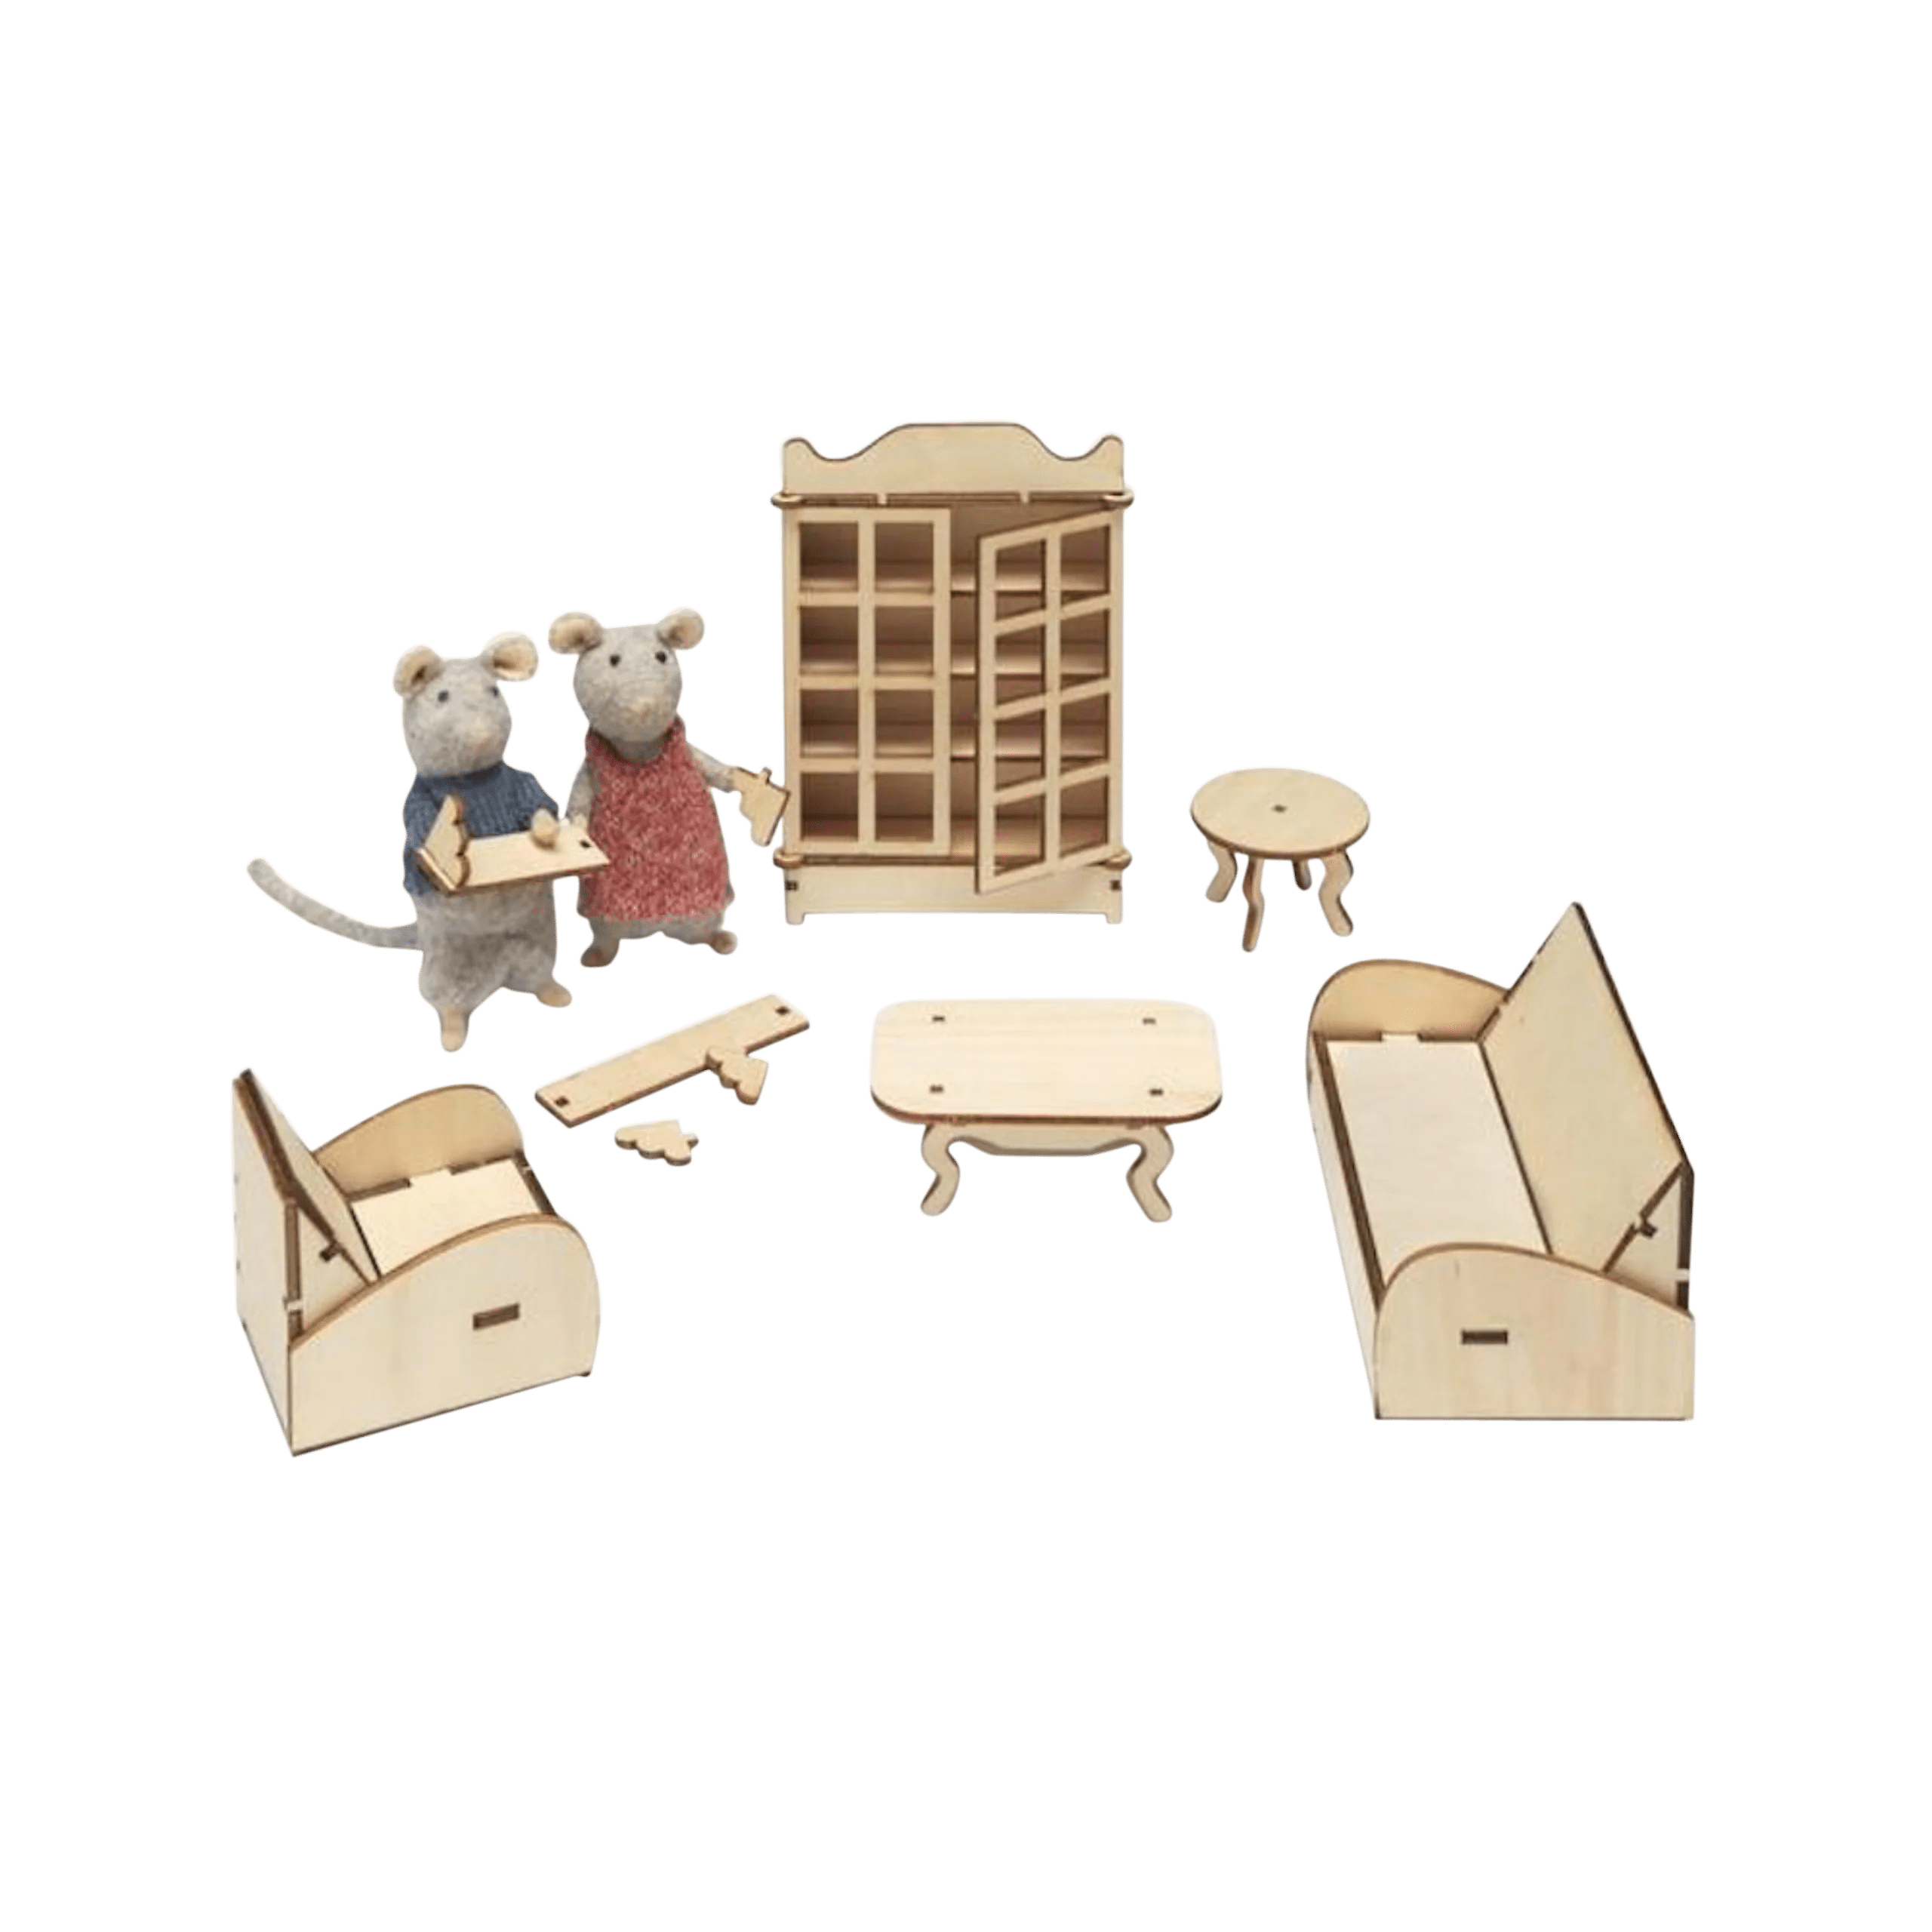 Sam & Julia- Living Room Furniture Kit - Saltire Games